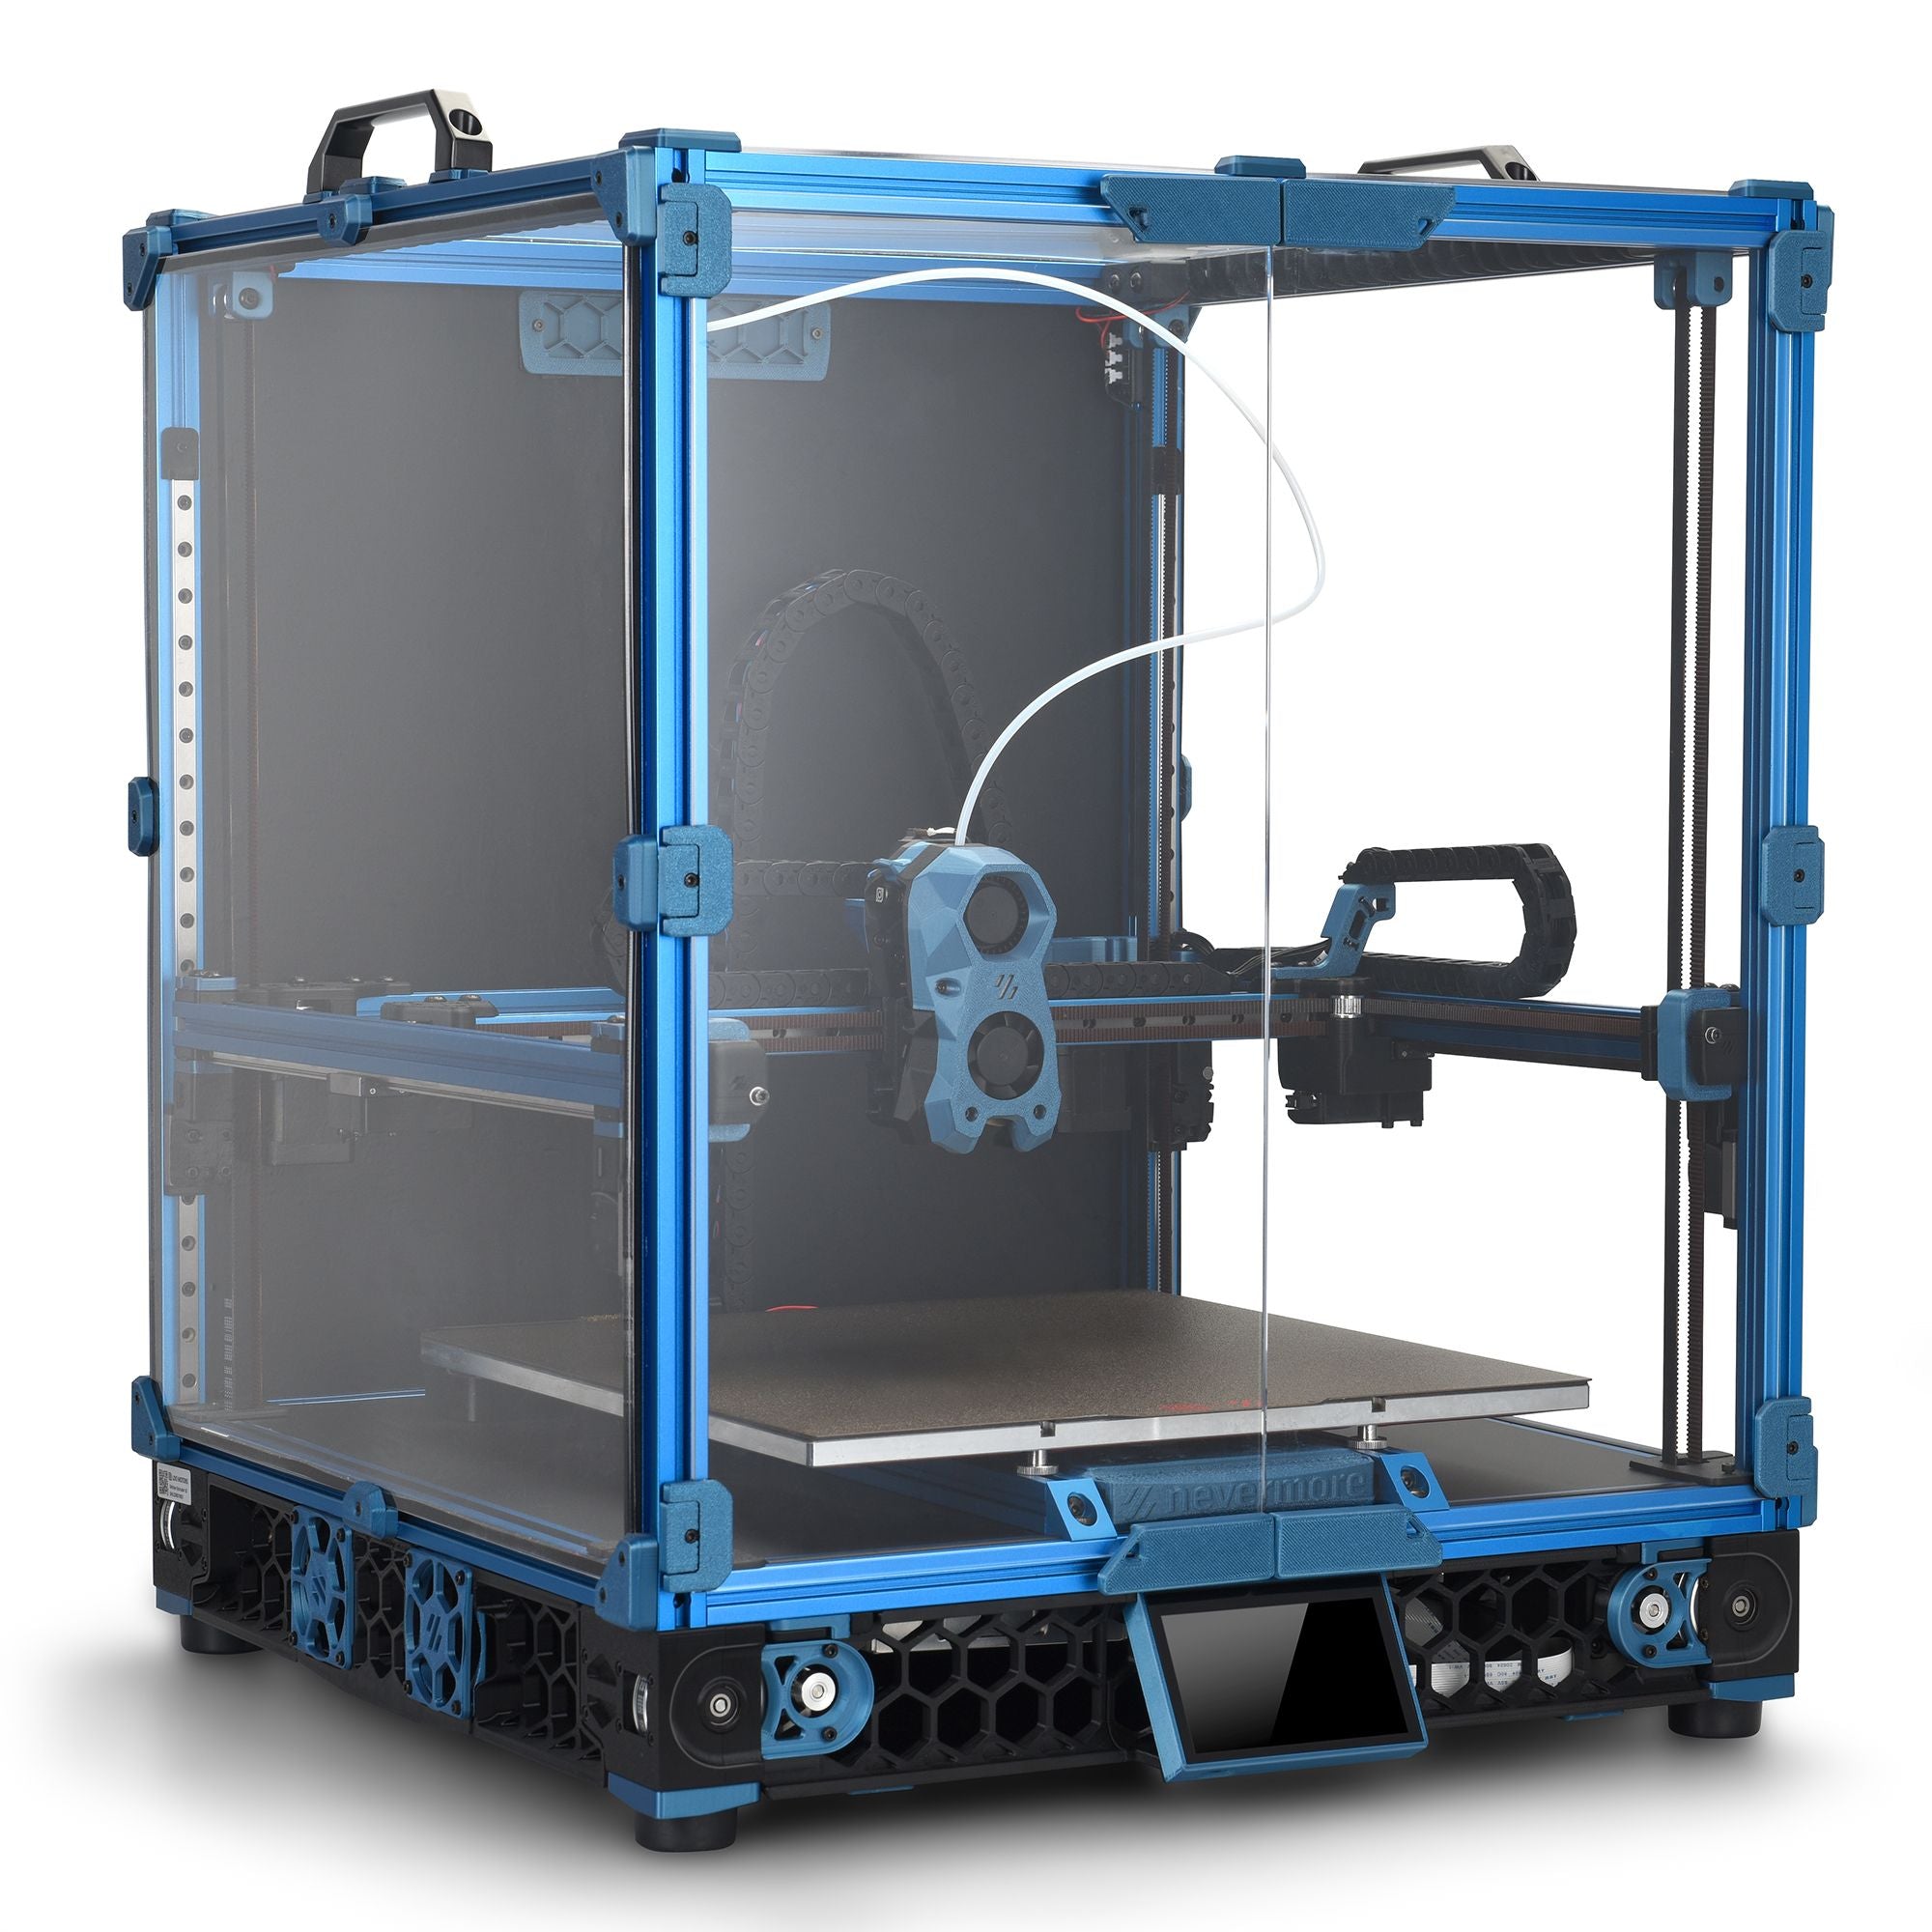 *Pre-Order* LDO Voron V2.4r2 Rev C 3D Printer Kit - 350